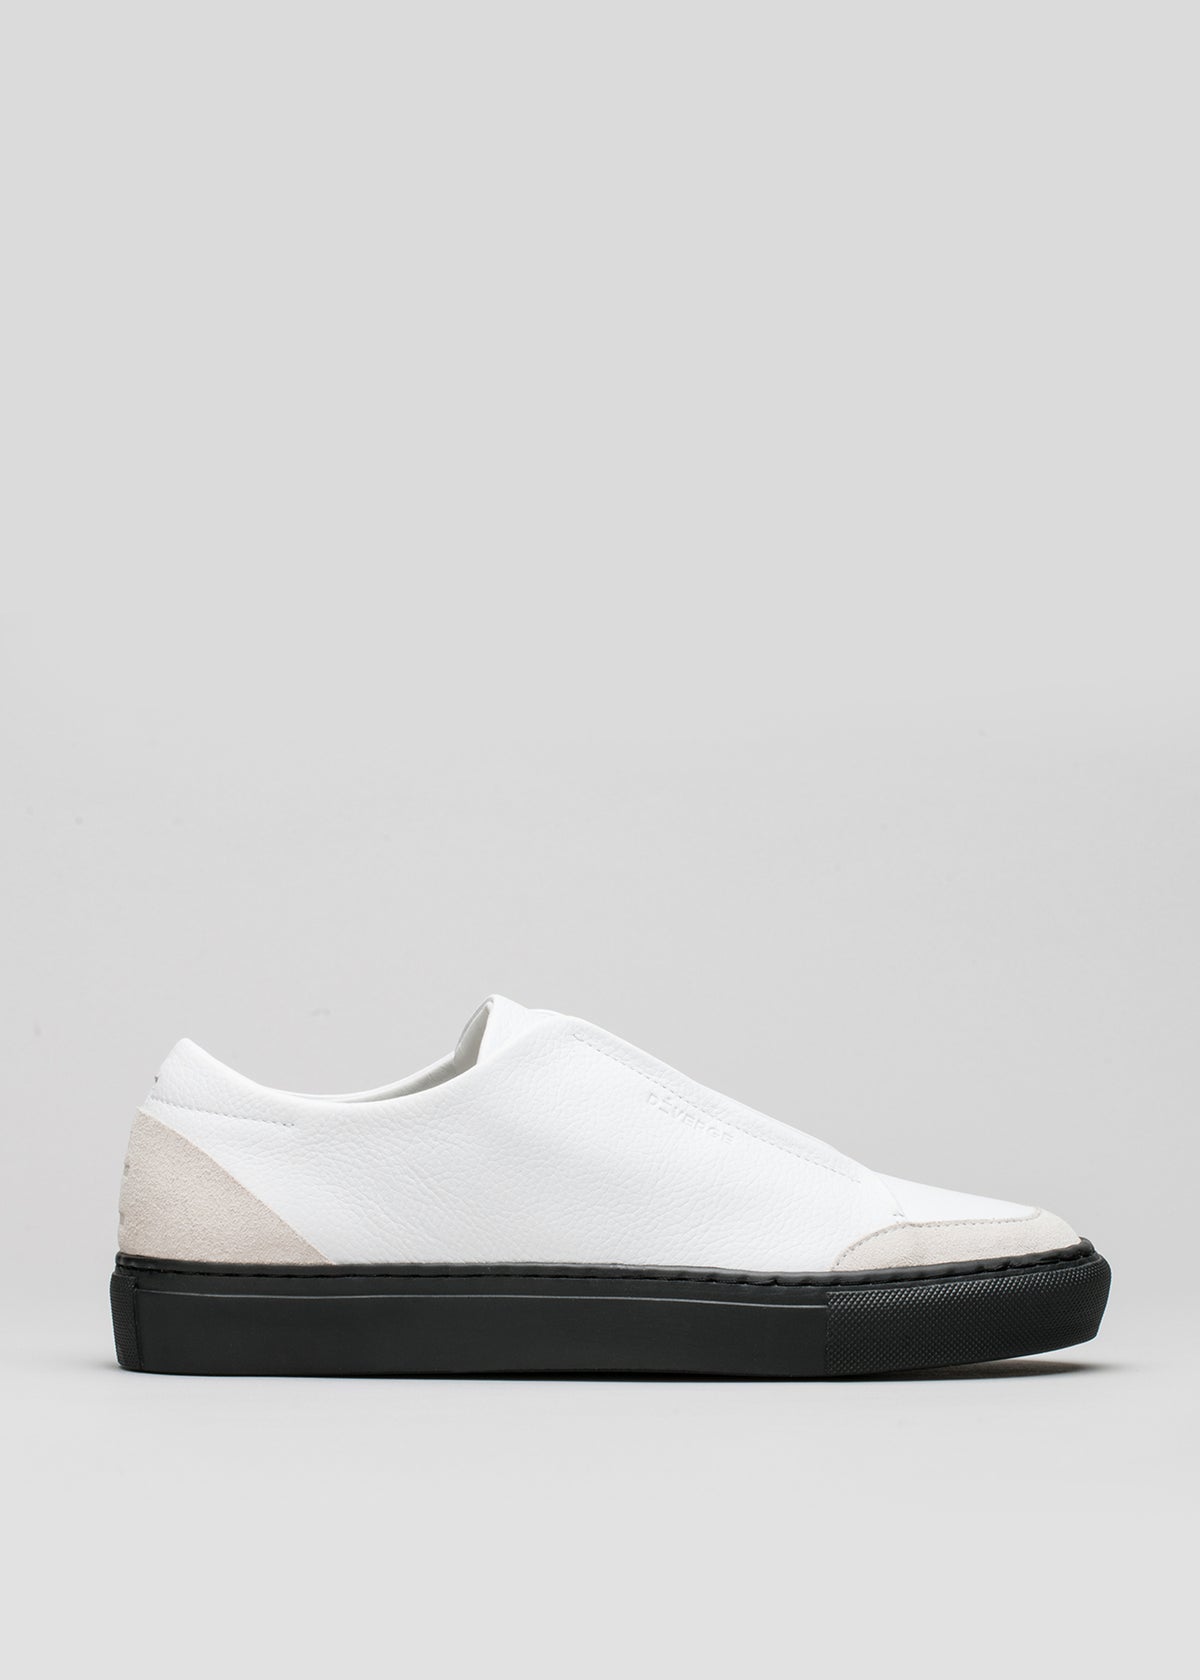 Sneaker slip-on V5 Snow White Floater w/Black con accento beige sul tallone e suola nera, su sfondo grigio chiaro. Fanno parte della nostra collezione di scarpe personalizzate.